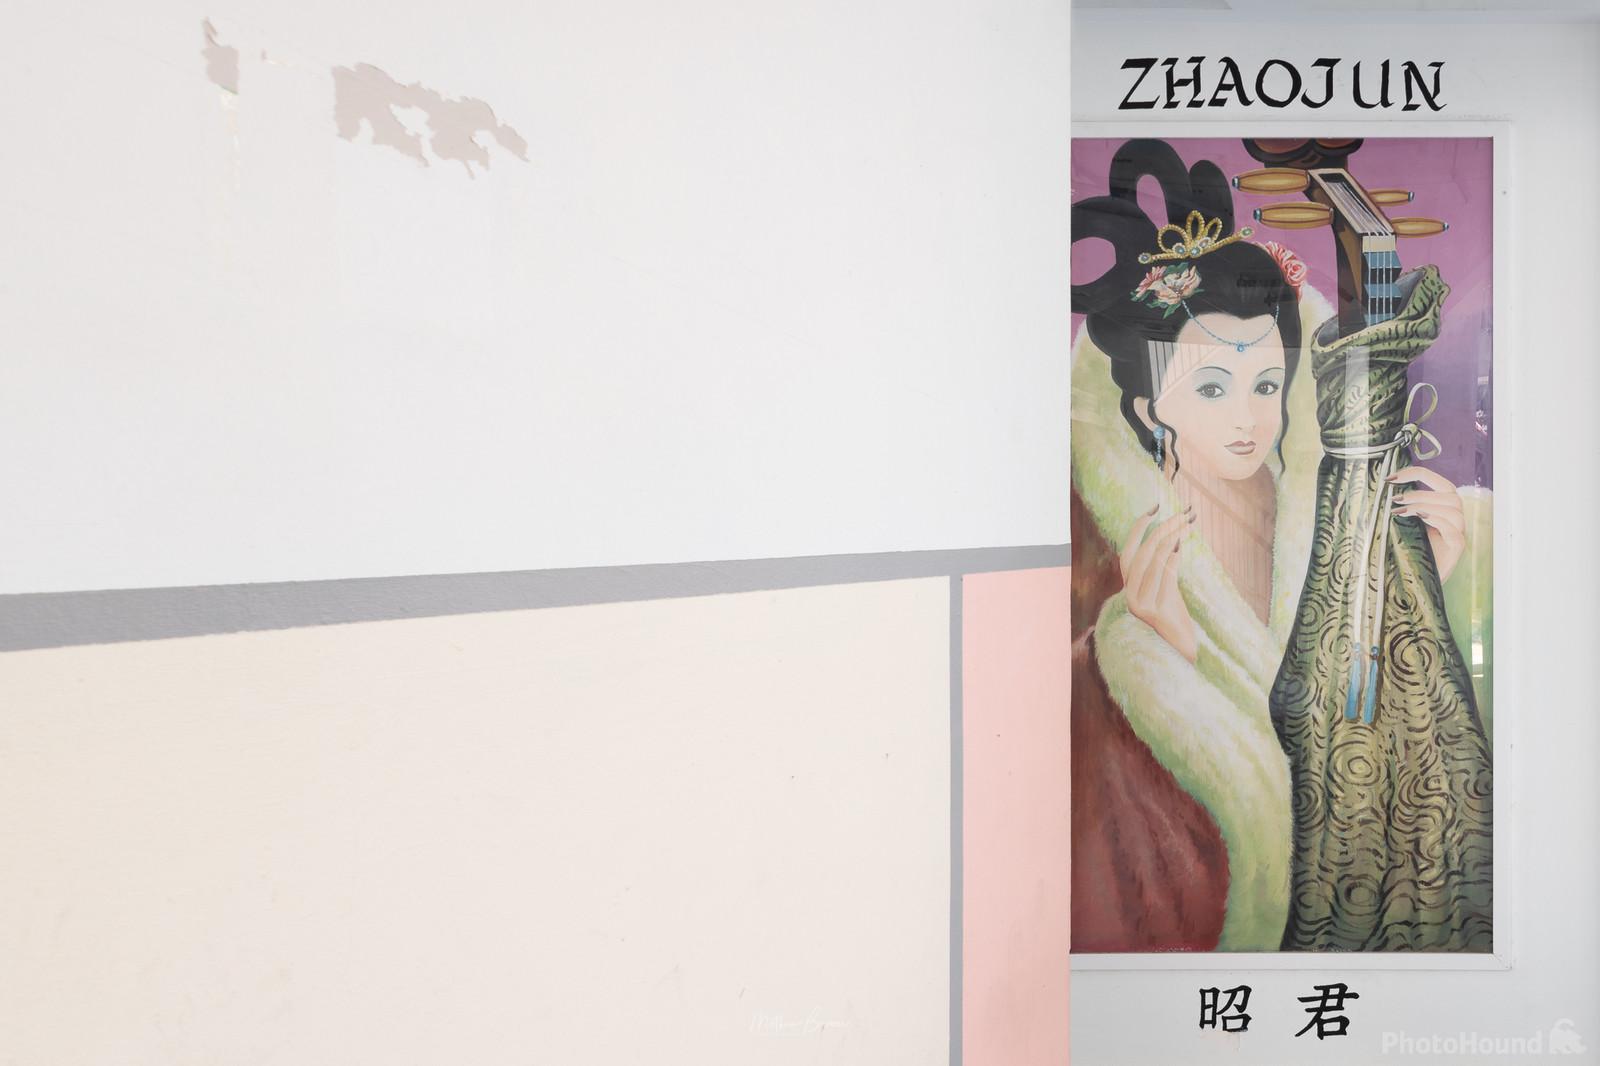 Image of Four Beauties Of Simei - Zhaojun by Mathew Browne